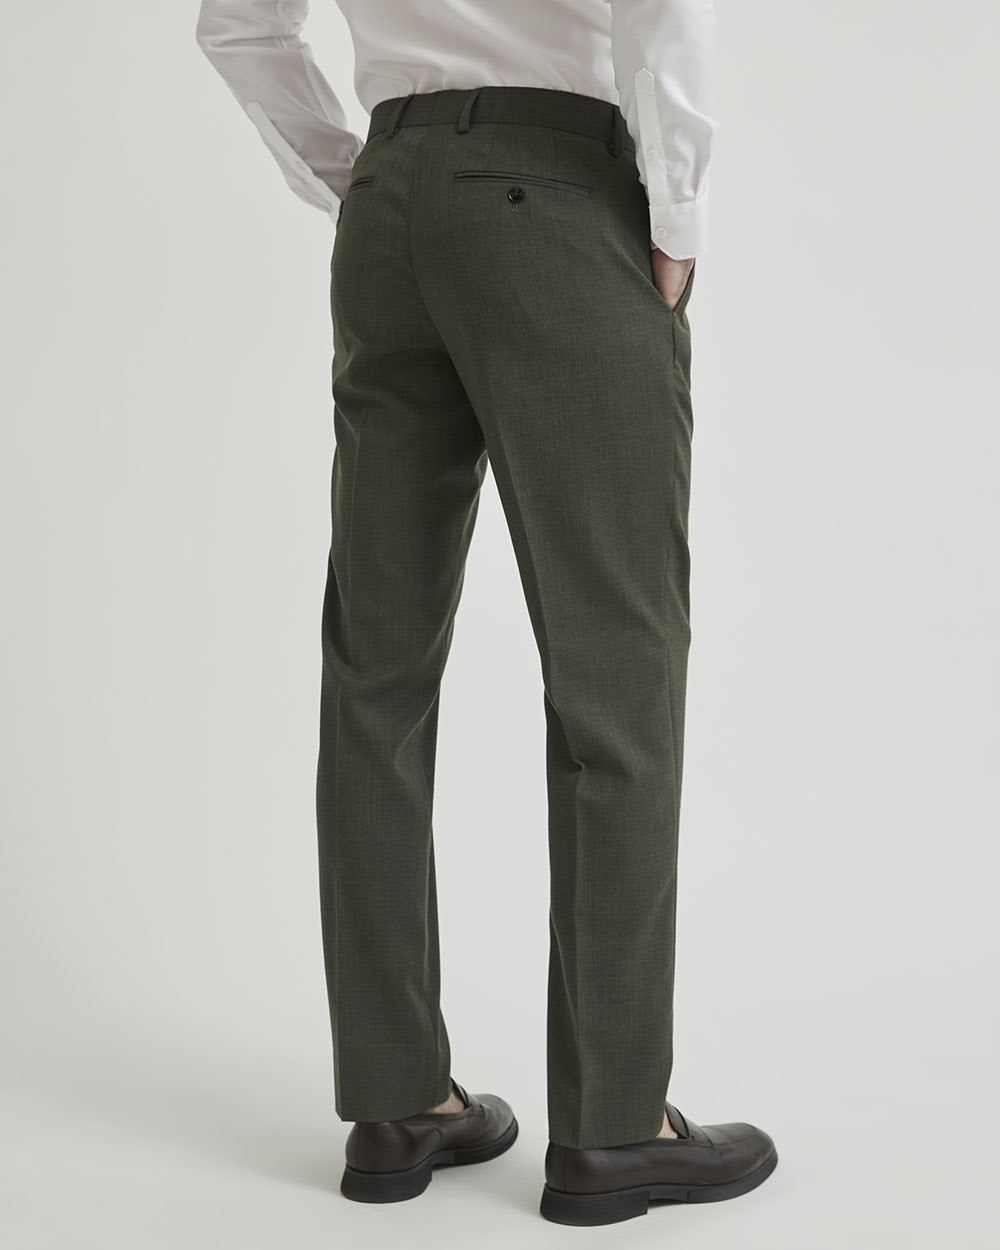 Slim Fit Suit Pants - Dark gray-green - Men